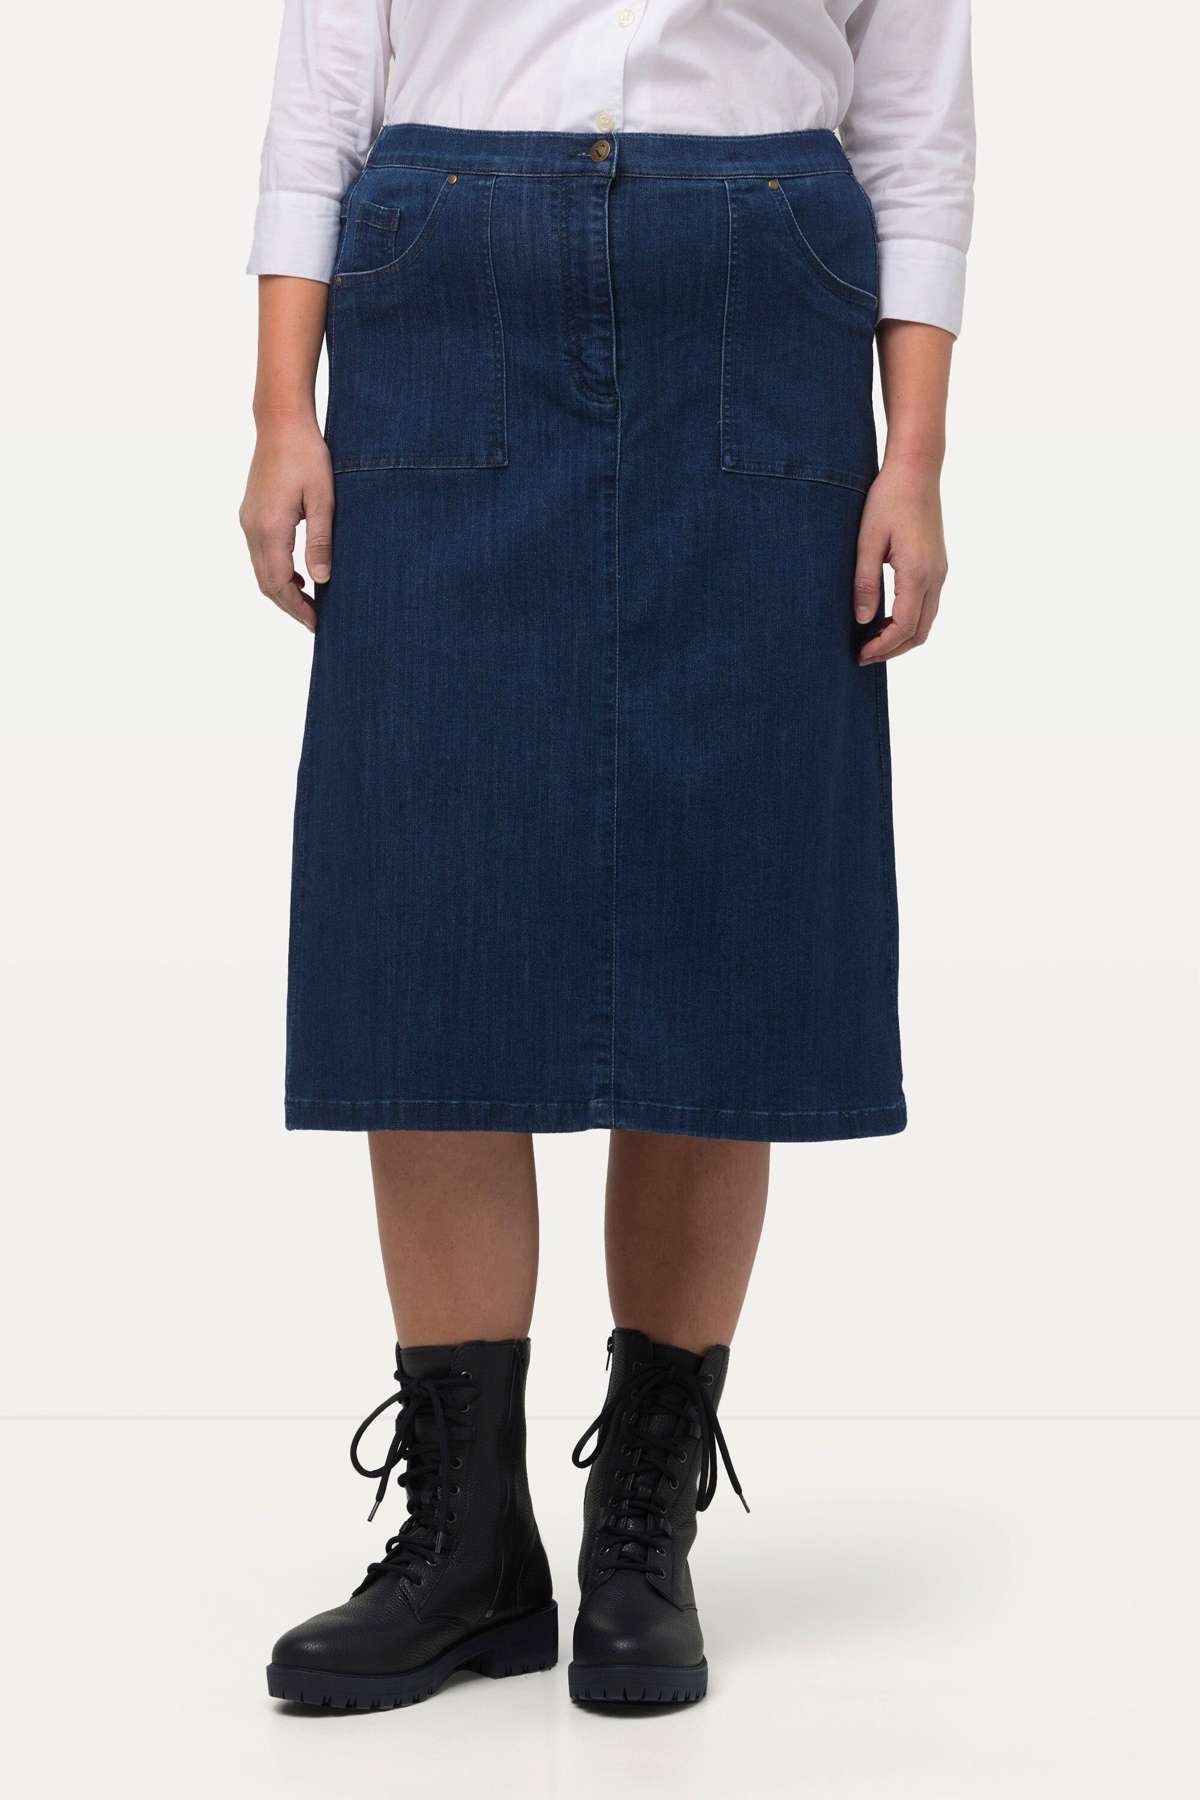 Джинсовая юбка Джинсовая юбка А-силуэта с карманами, эластичная, комфортная